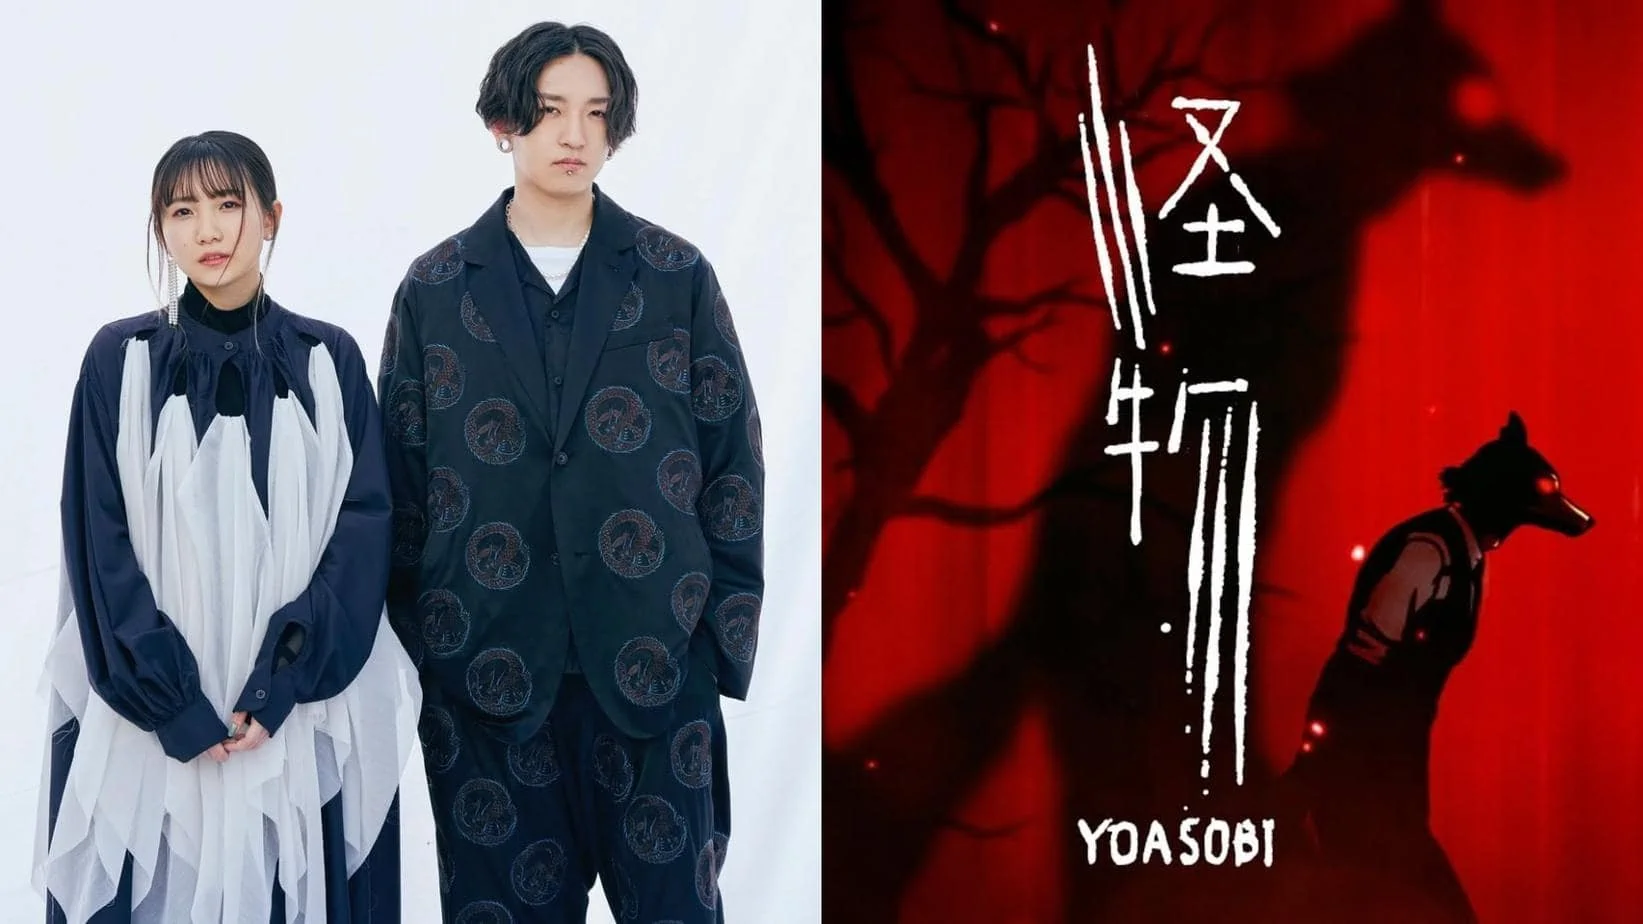 TABUN -YOASOBI「たぶん」 Lyrics Video (Kan/Rom/Eng) - BiliBili